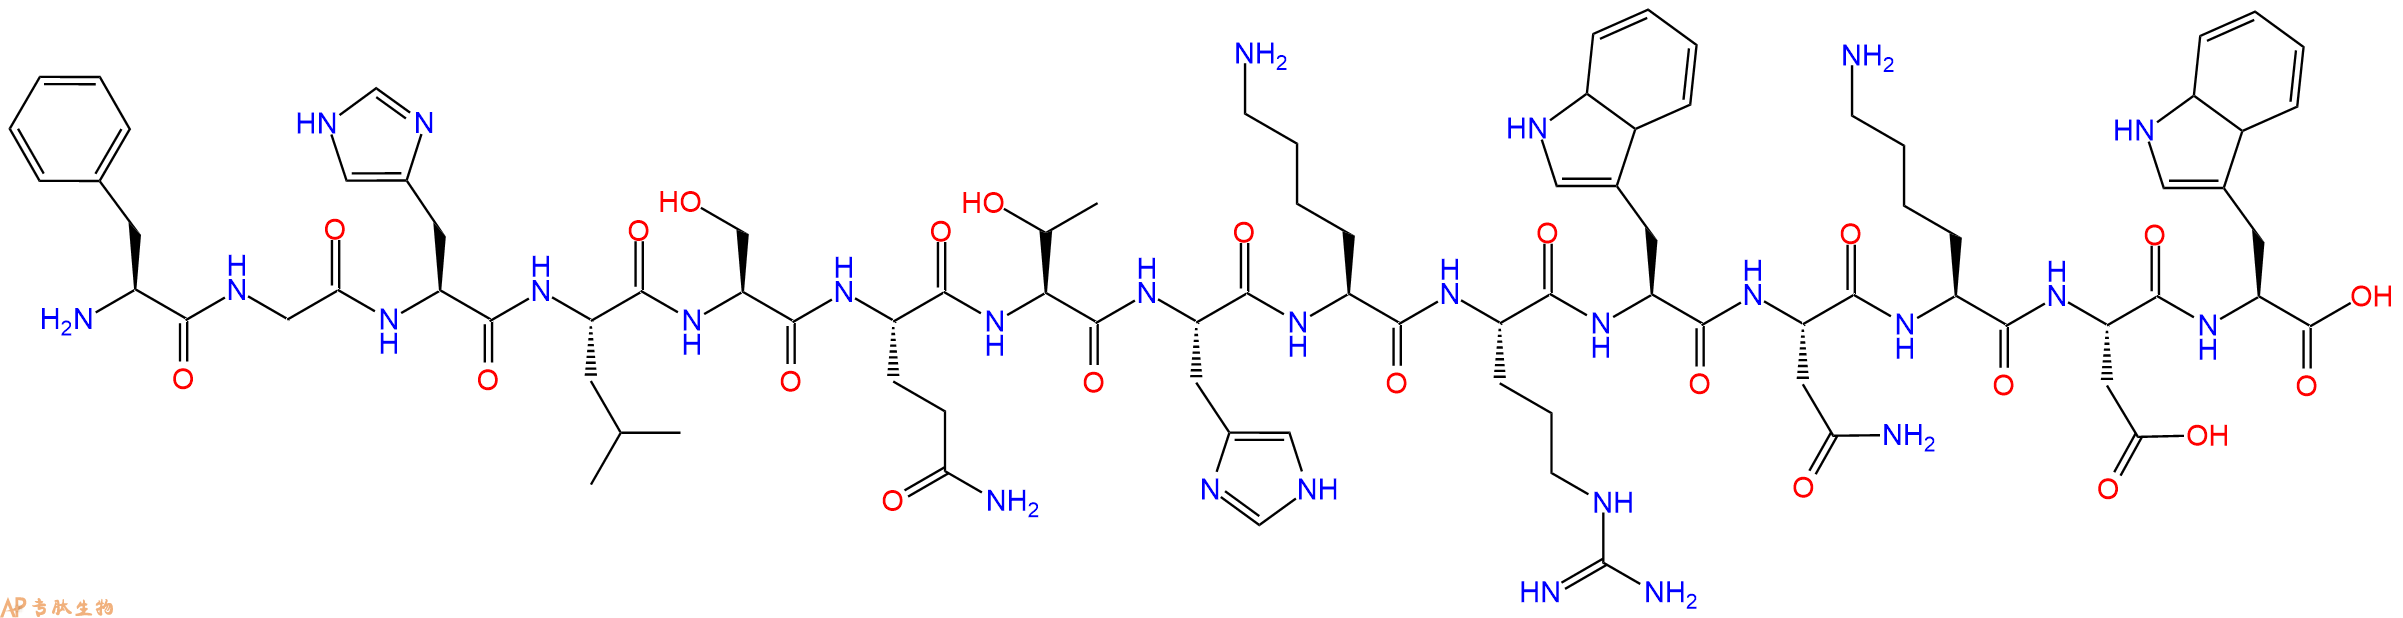 多肽FGHLSQTHKRWNKDW的参数和合成路线|三字母为Phe-Gly-His-Leu-Ser-